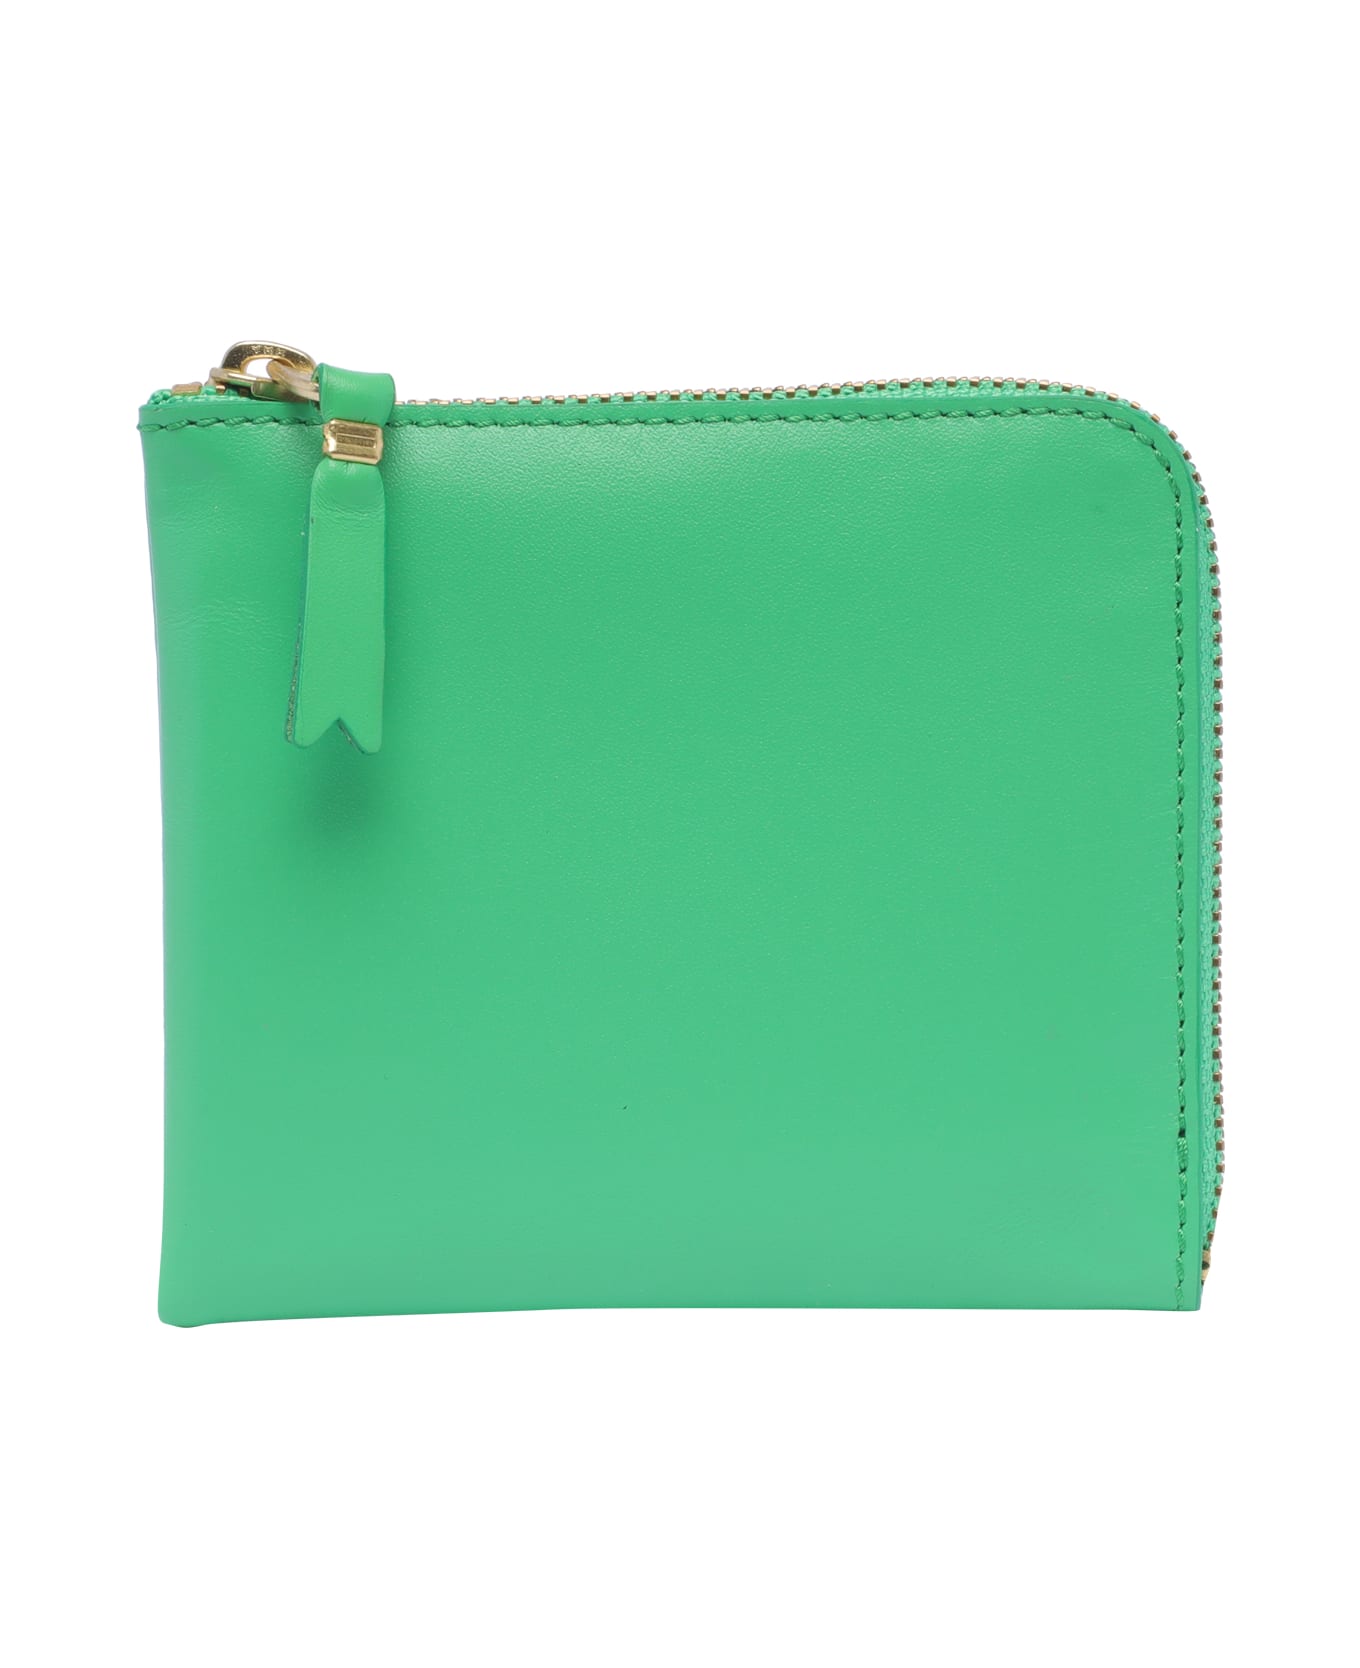 Comme des Garçons Wallet Classic Leather Line Wallet - Green 財布